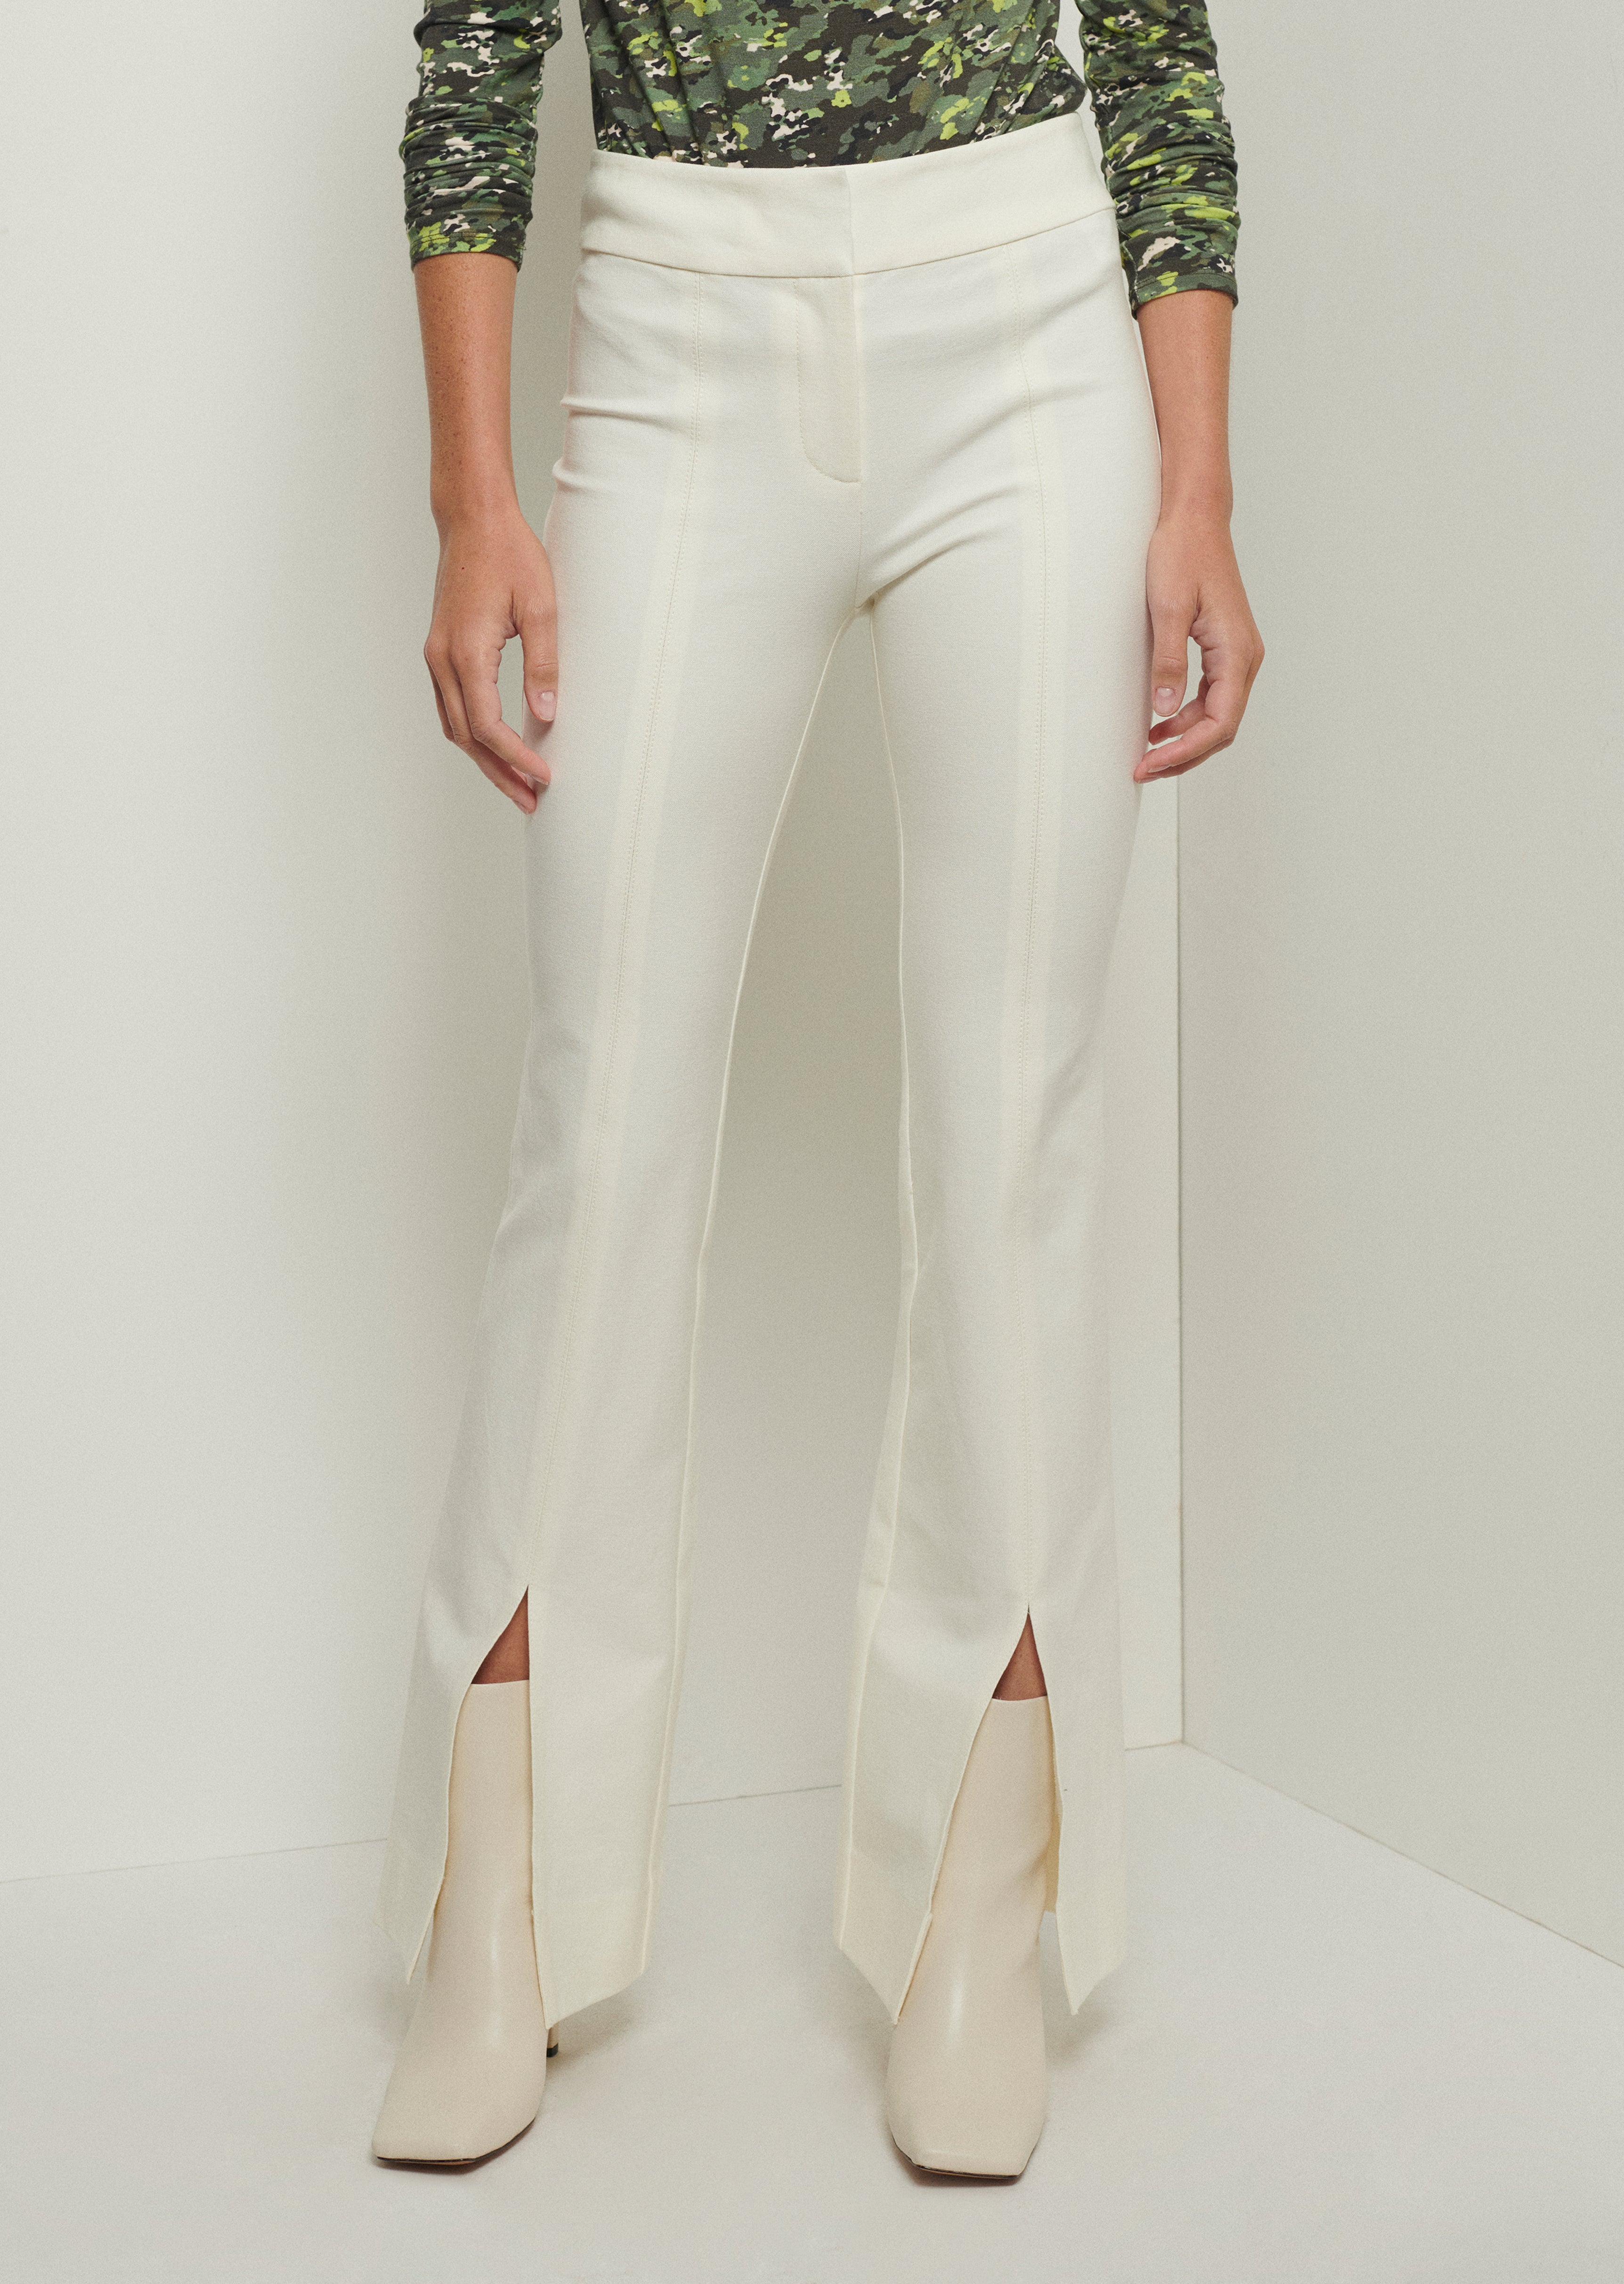 Maeve Soft White Front Slit Trouser